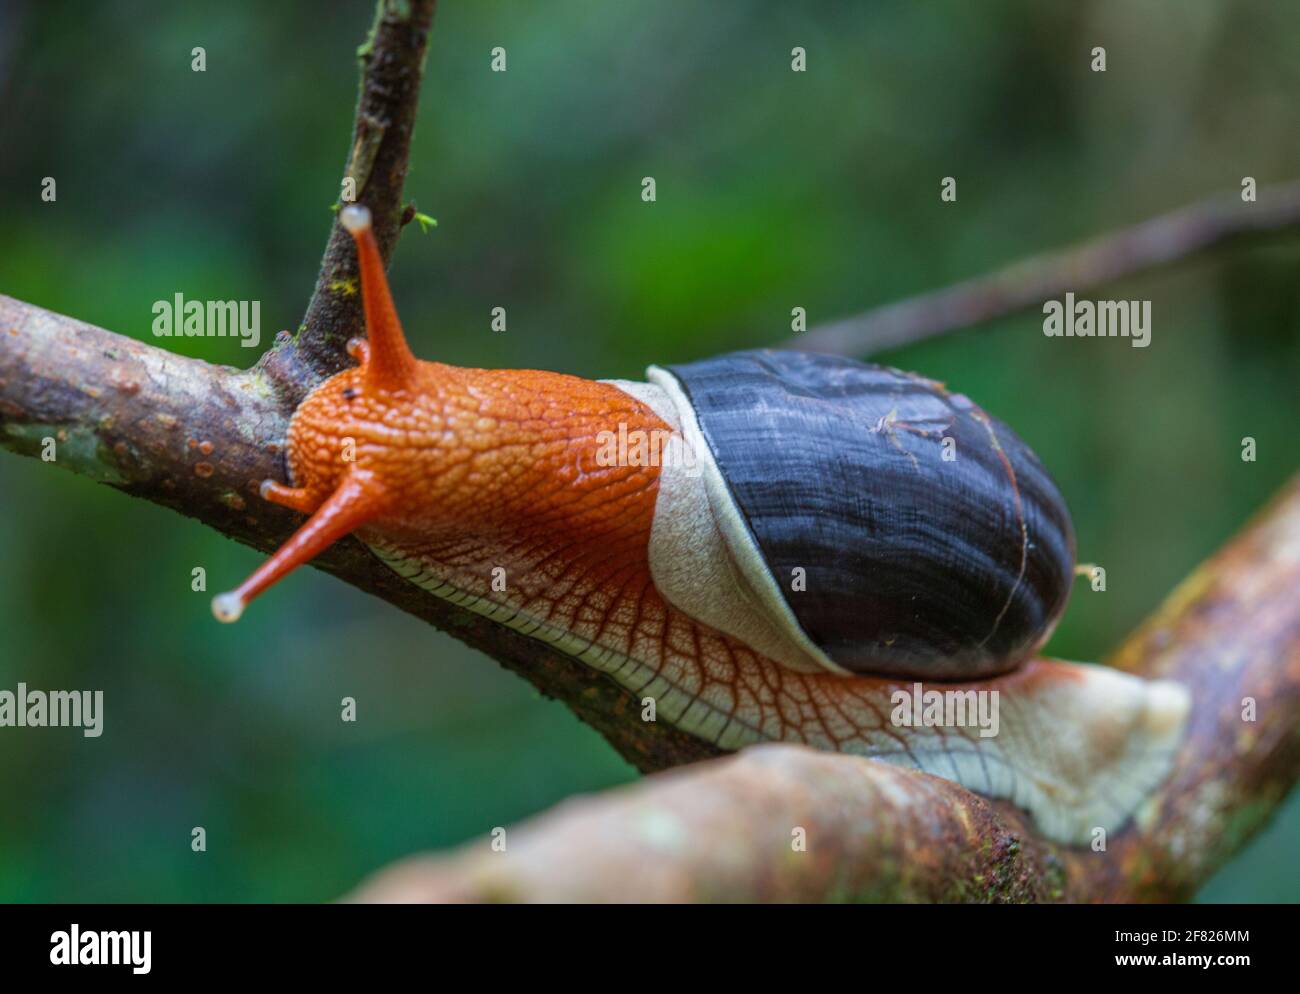 Indrella ampolla - un mollusco endemico dei Ghati occidentali dell'India - di solito si trova durante il monsone. Fotografato a Coorg, India. Foto Stock